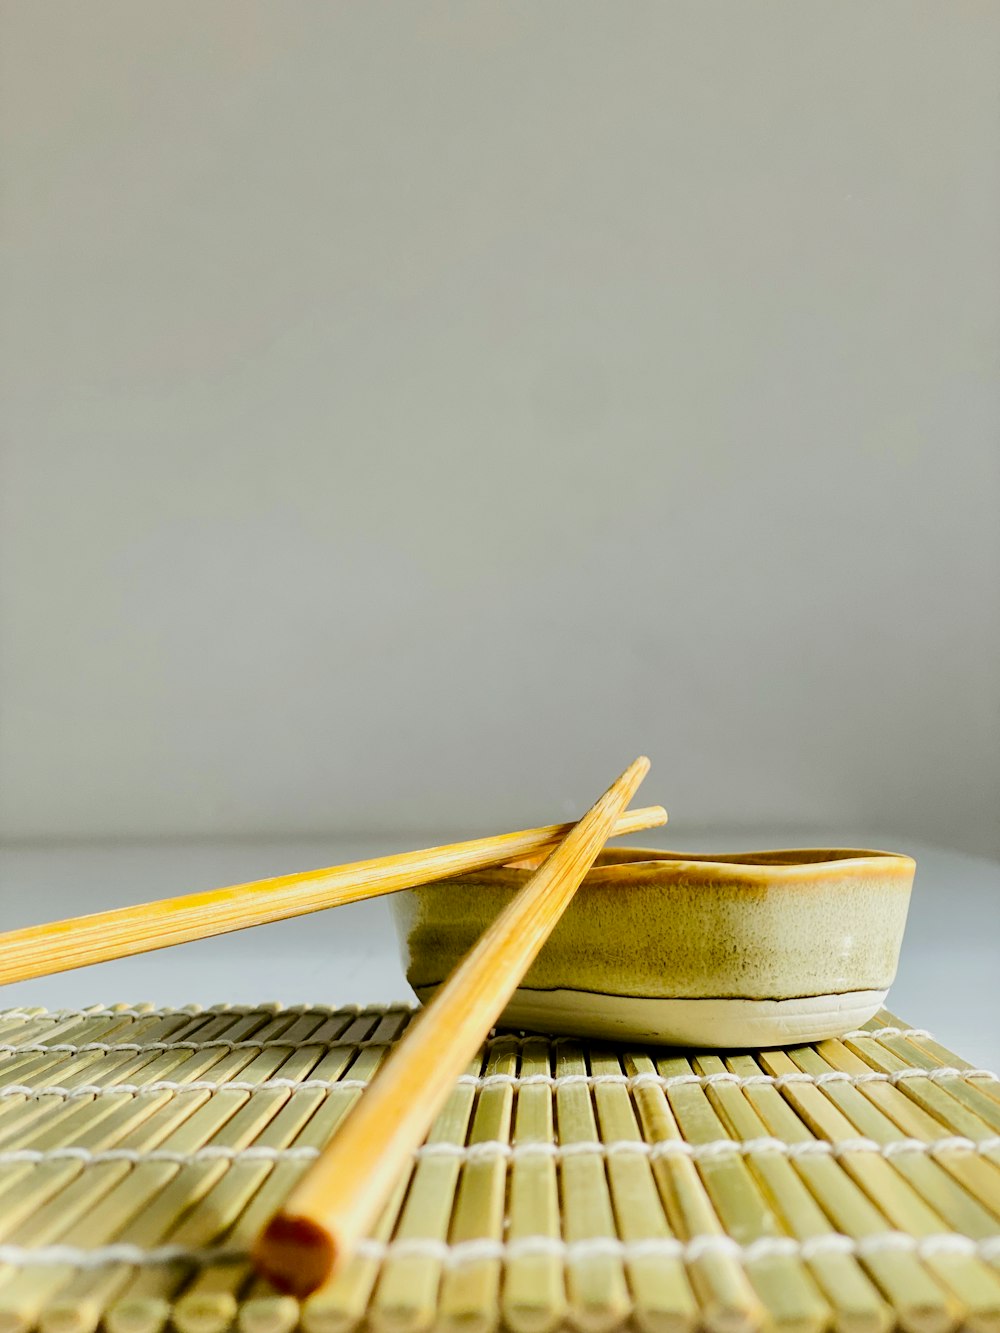 chopsticks and a bowl on a mat